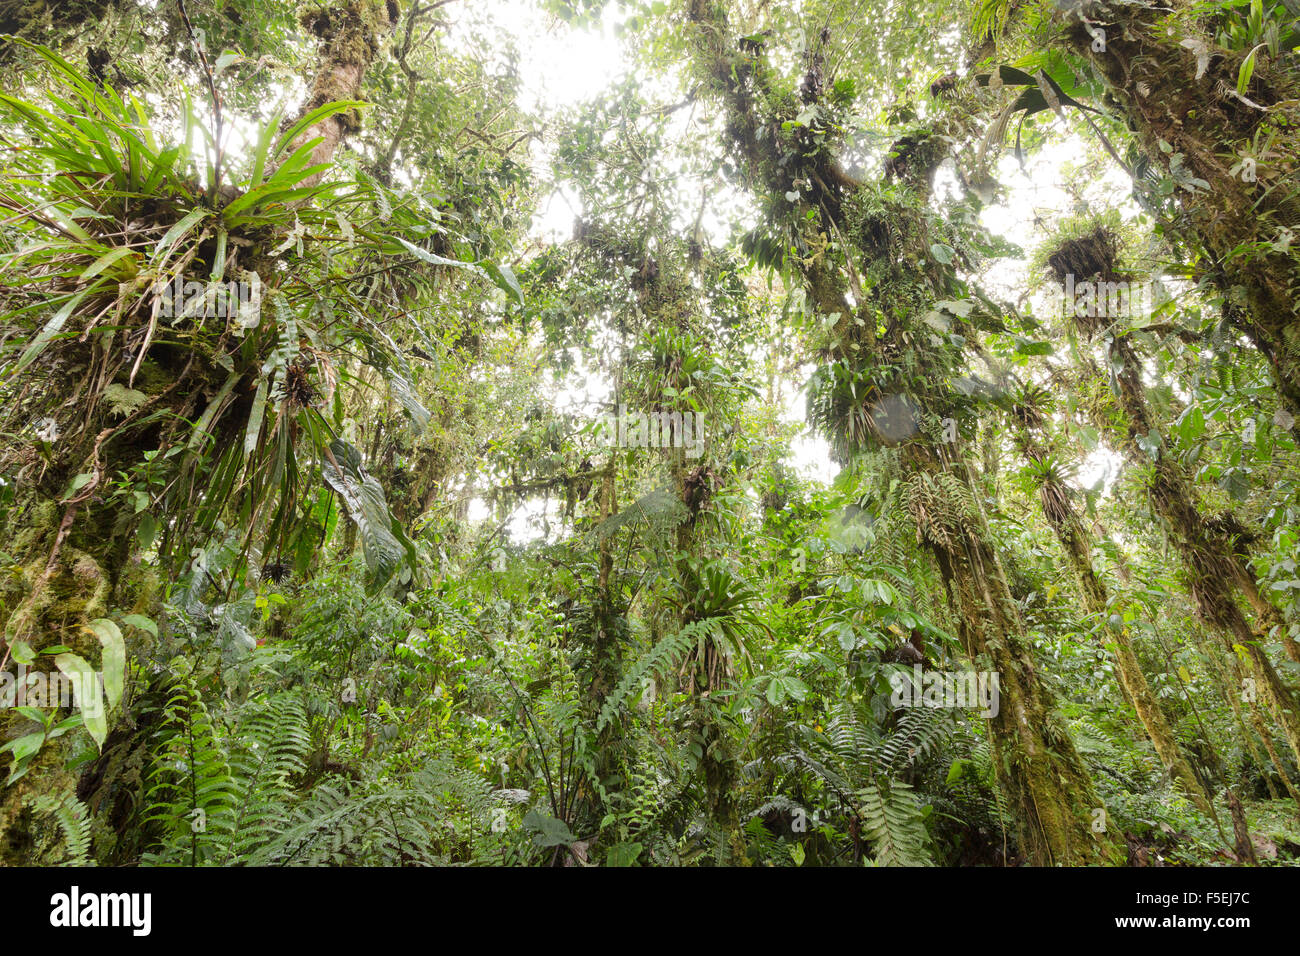 Epifite laden alberi in umido cloudforest a 2200 m di altitudine su amazzonica pendici delle Ande in Ecuador Foto Stock